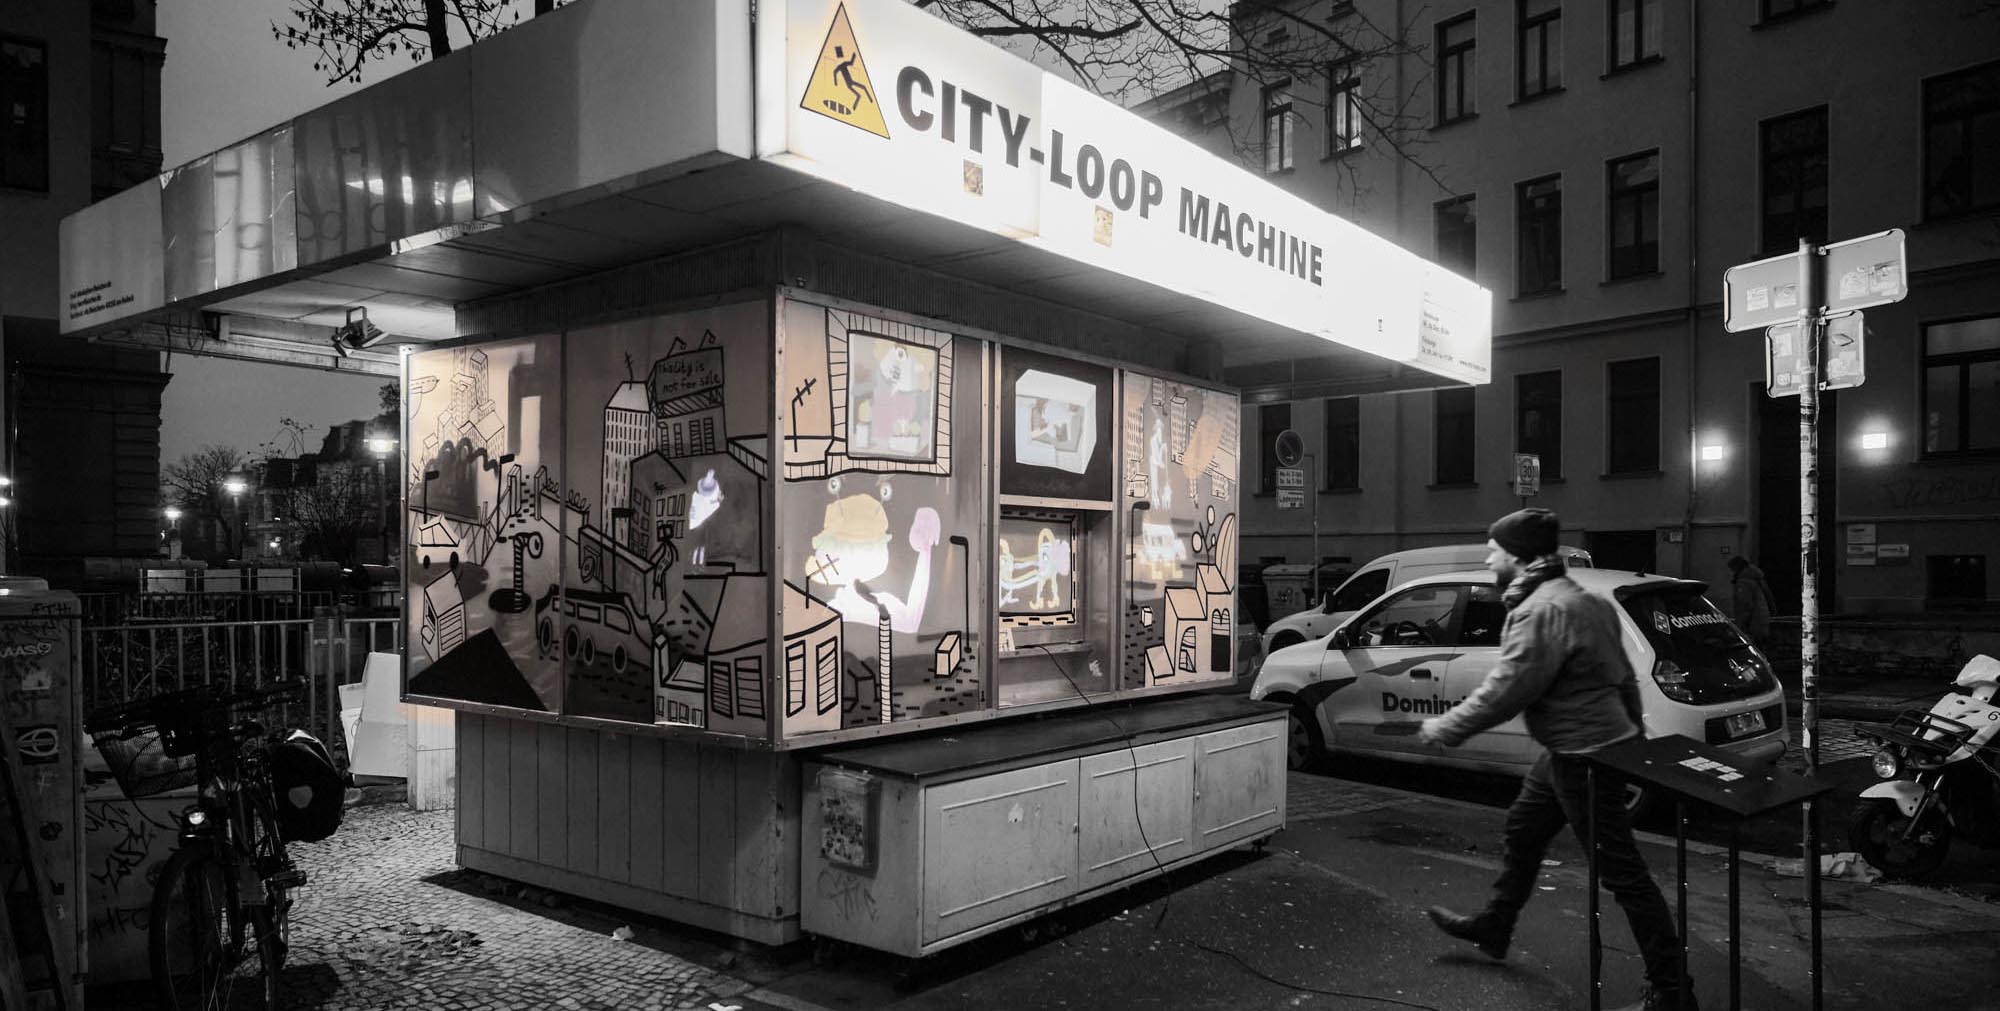 City-Loop Machine